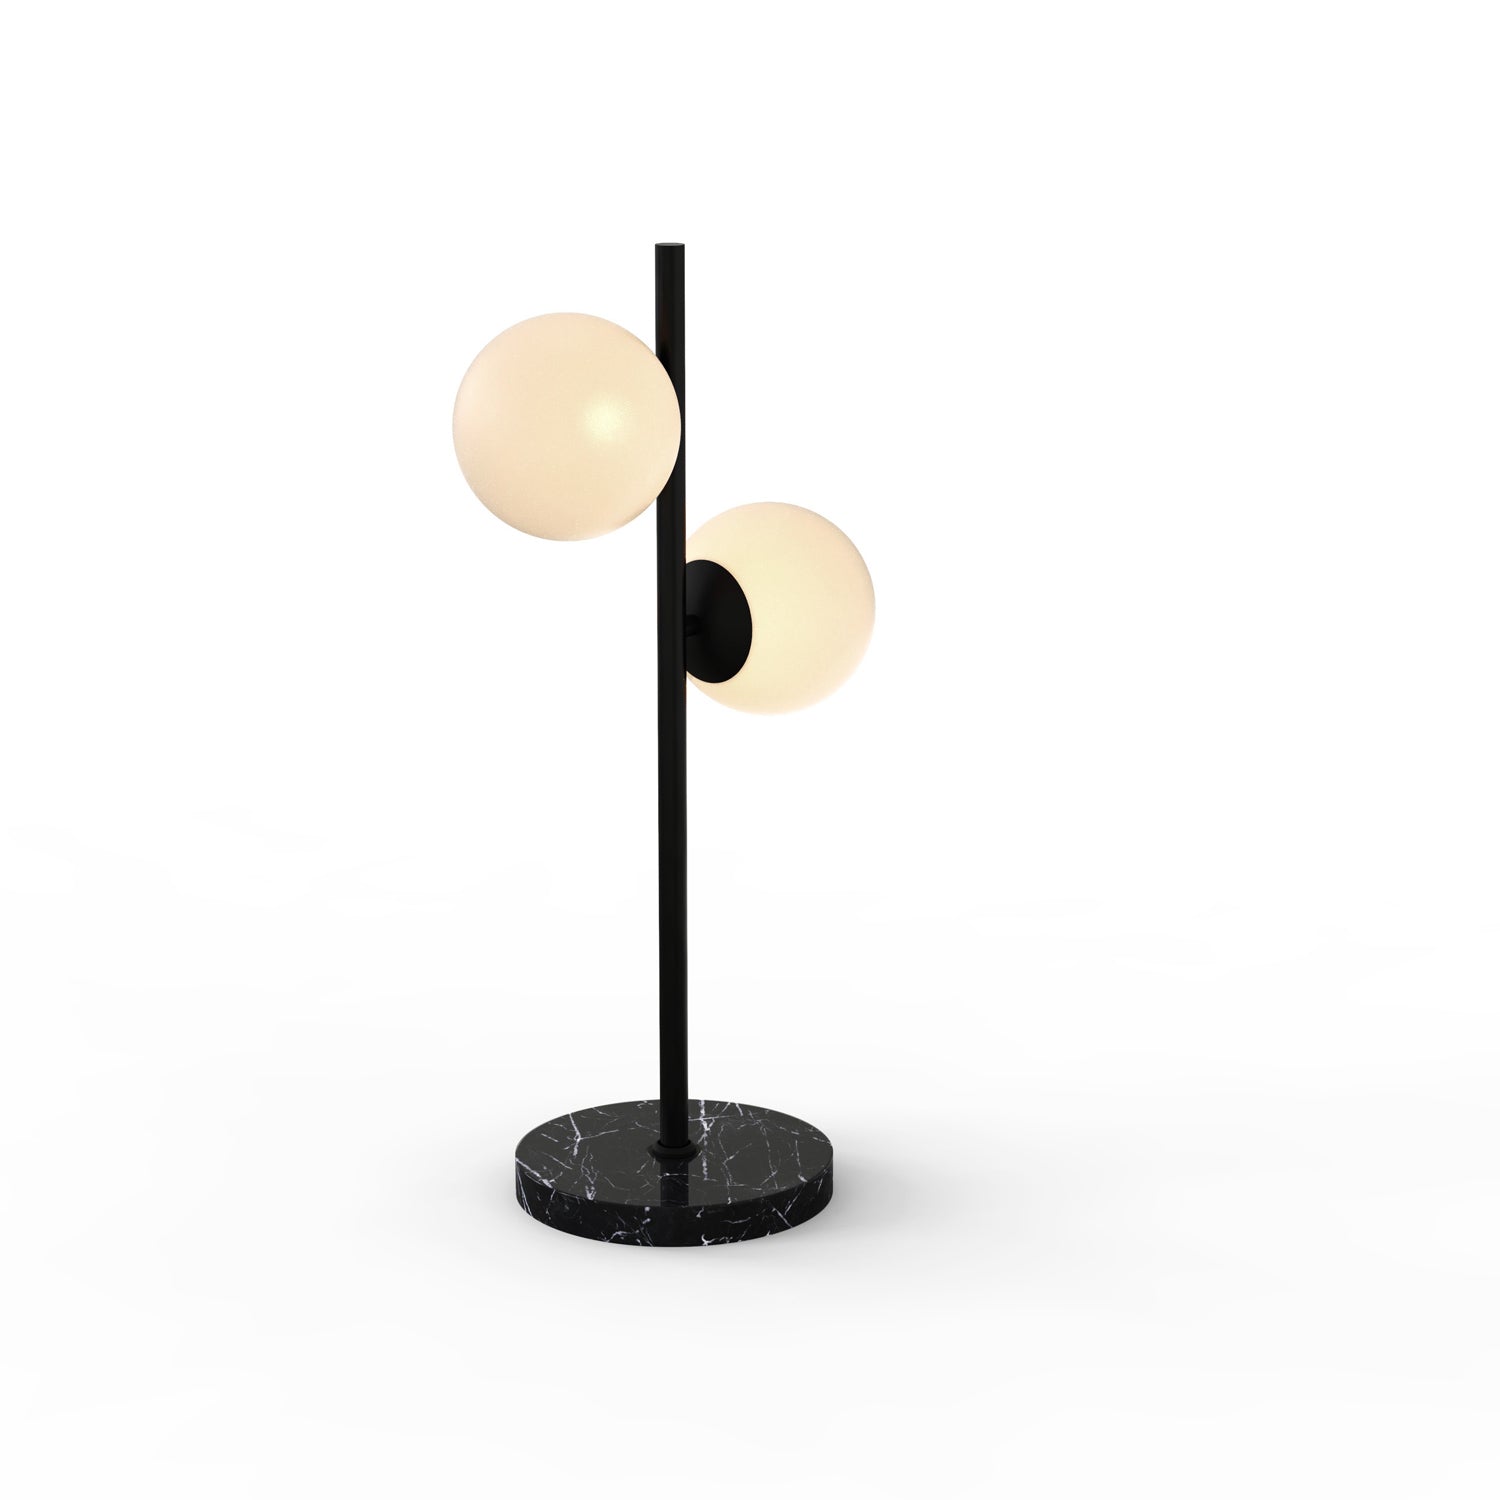 Castell 2 Globe LED Table Lamp, Matte Black